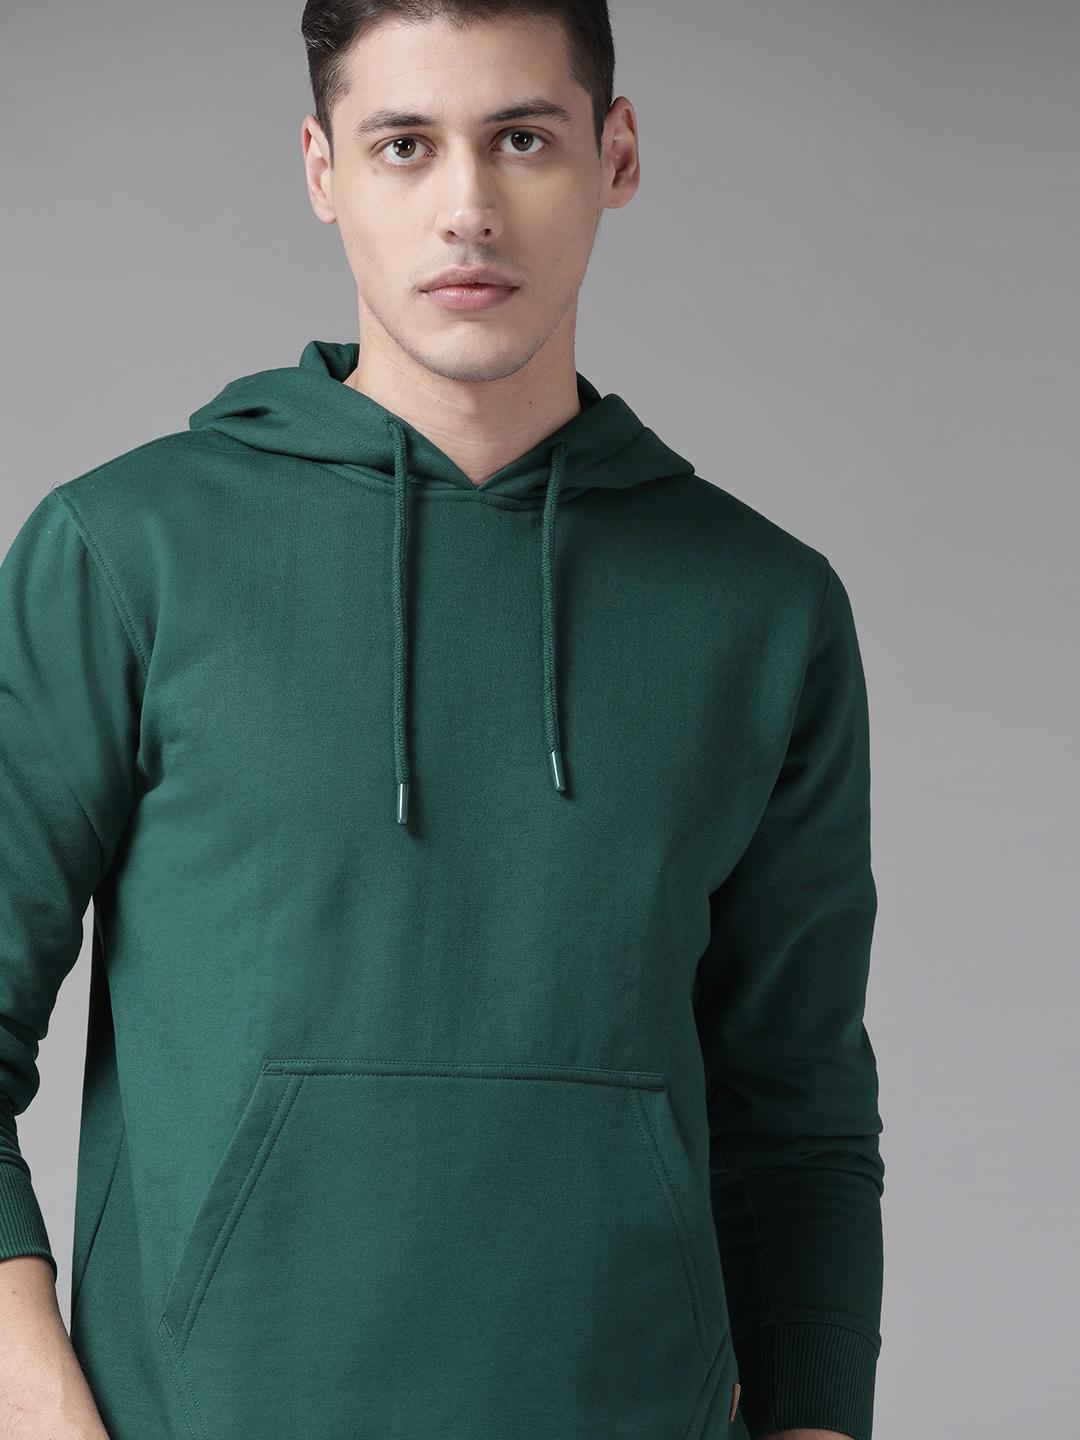 roadster-men-green-solid-hooded-sweatshirt